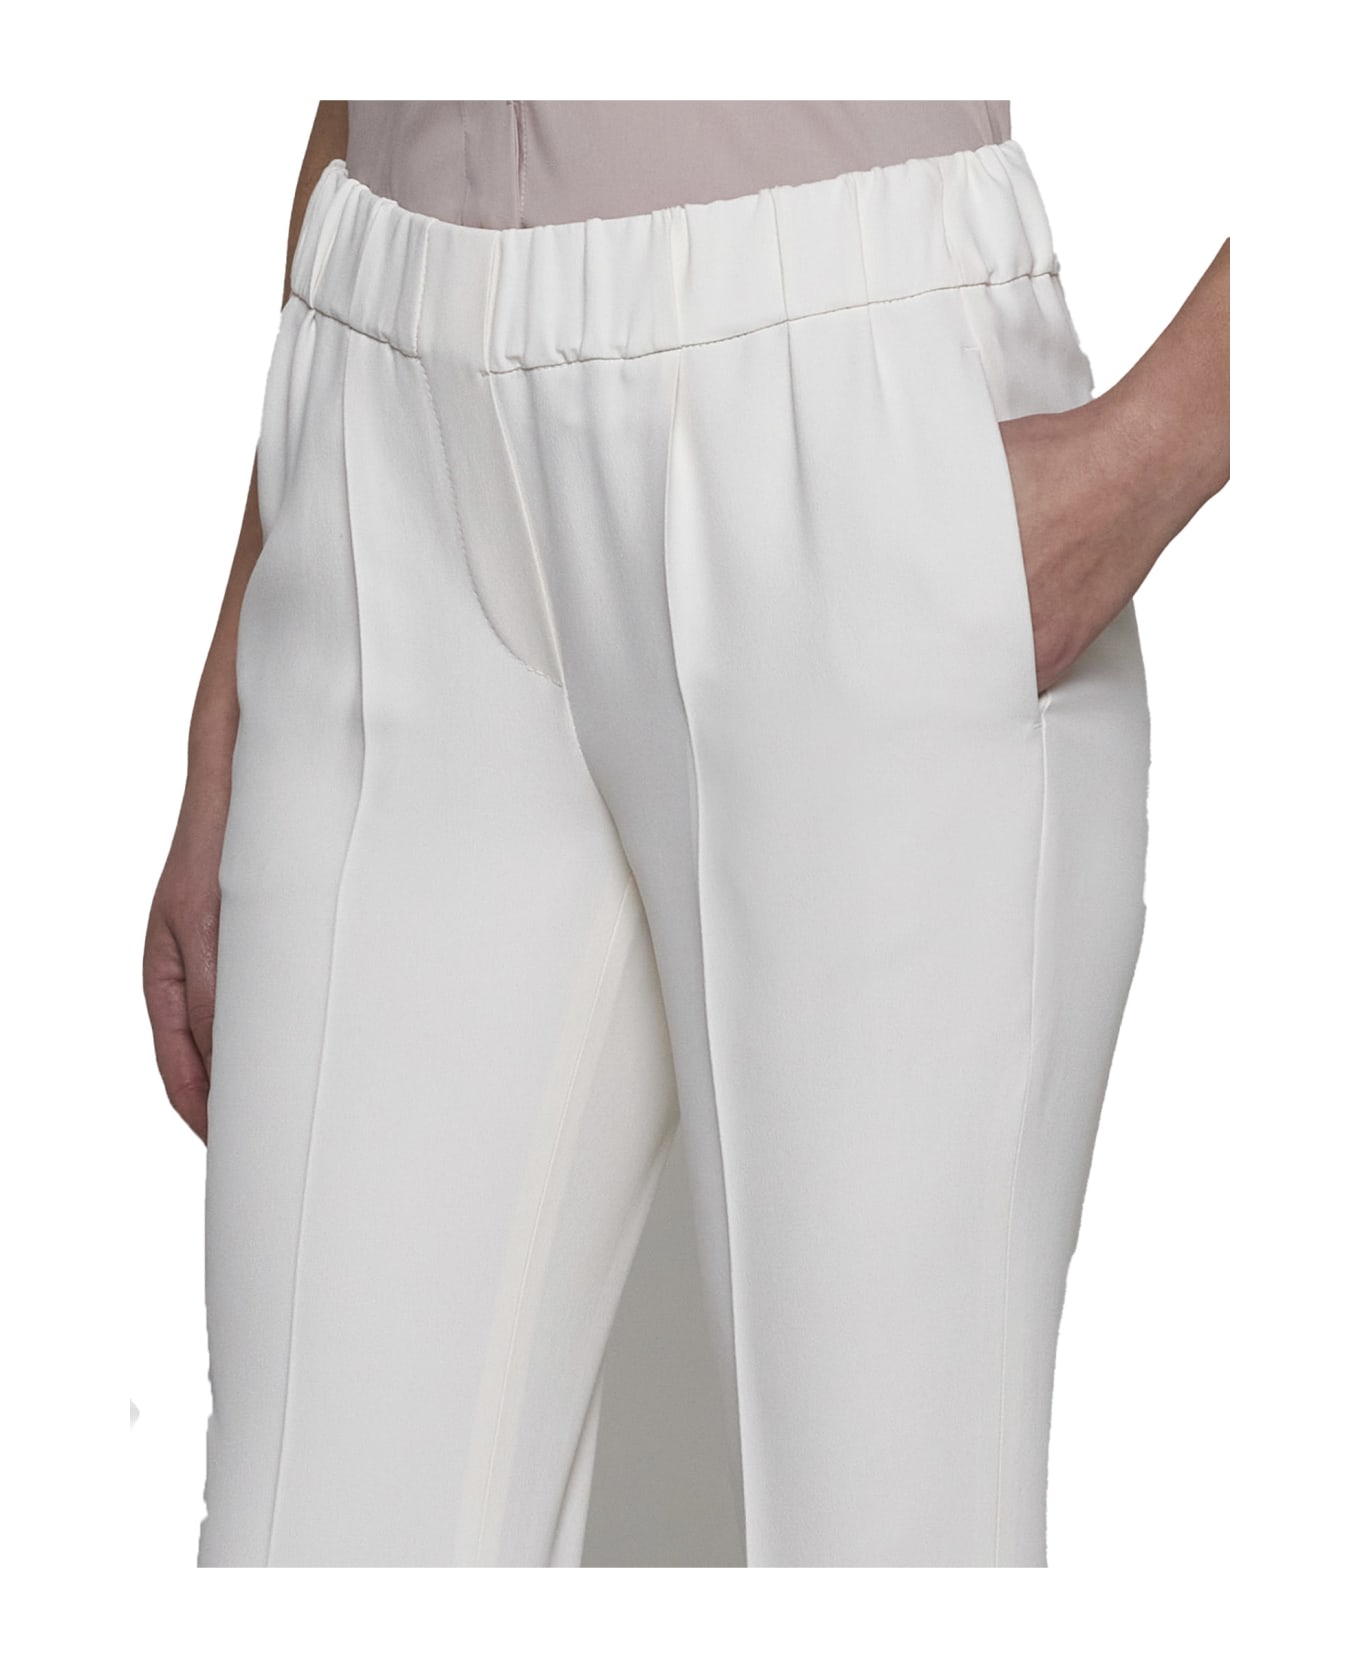 Brunello Cucinelli Pants - Pure white